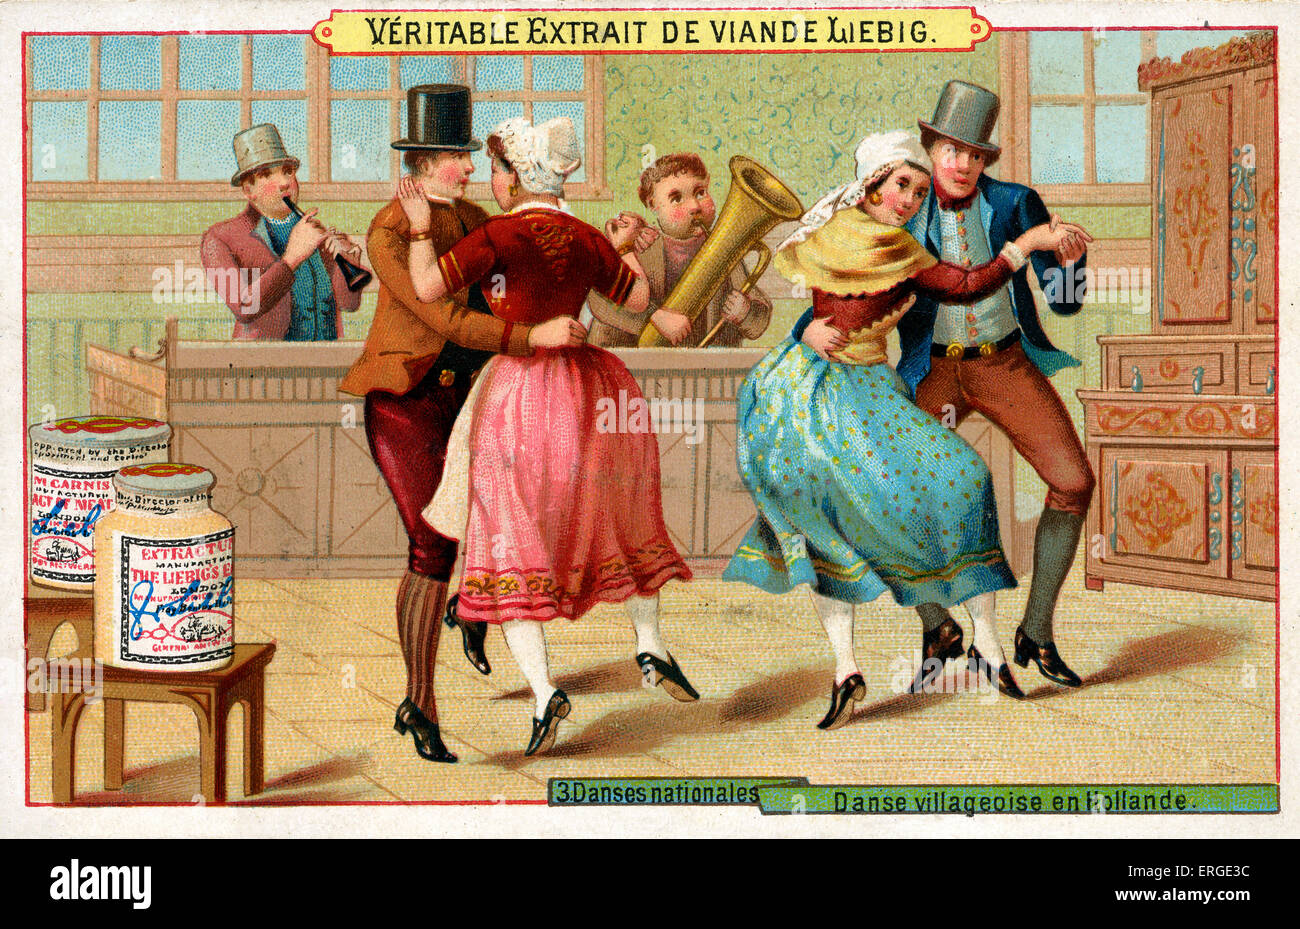 Dutch villagers' dance. Caption reads: 'Danse villageoise en Hollande'. Liebig card series: Danses nationales (1889). Stock Photo